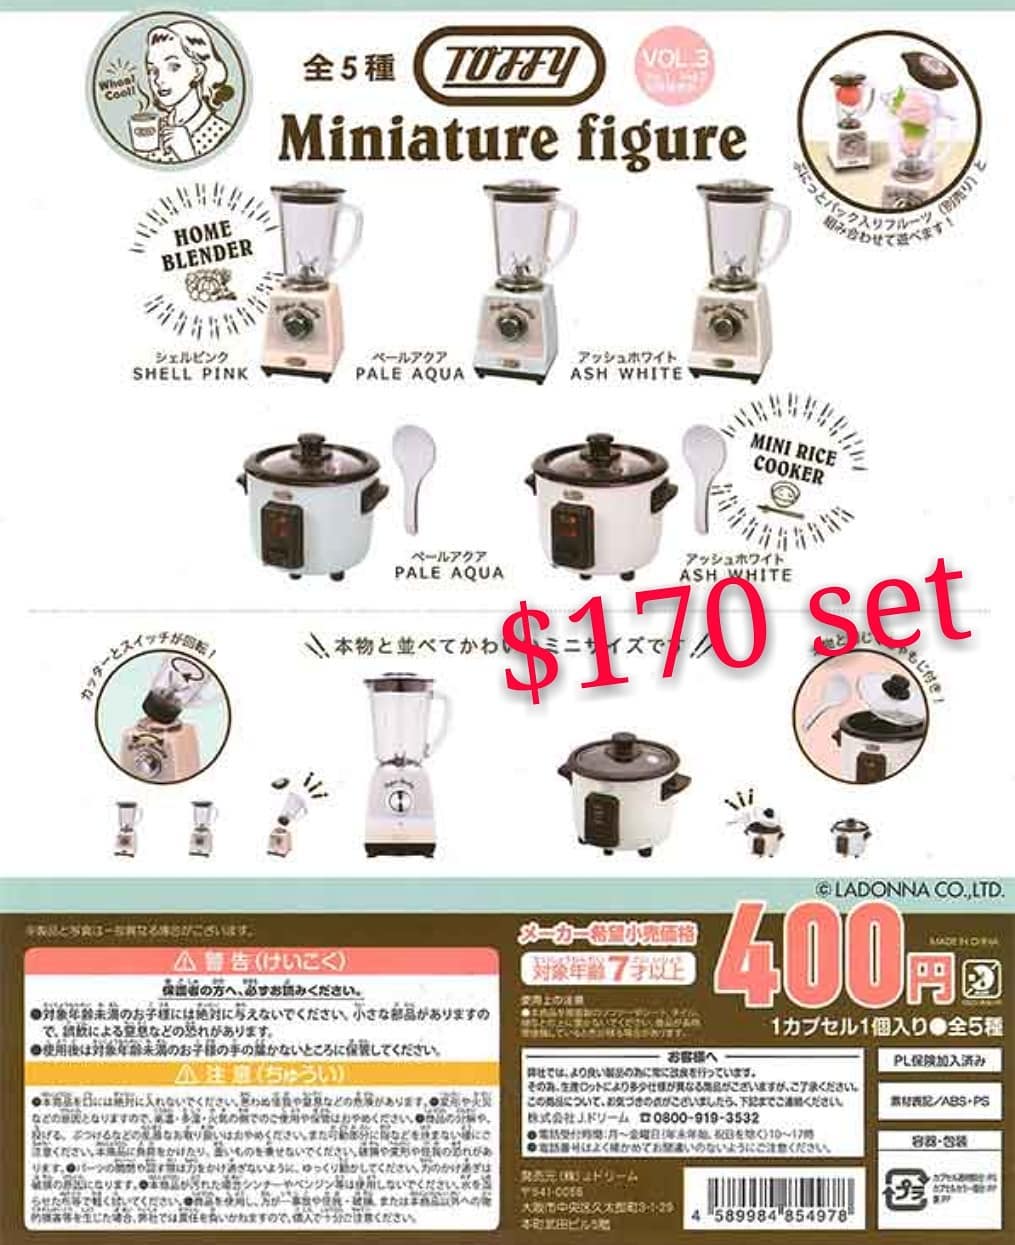 Kenelephant Toffy Miniature Figure Rice Cooker Vol.3 Re-ment Size Pale Aqua No.4 